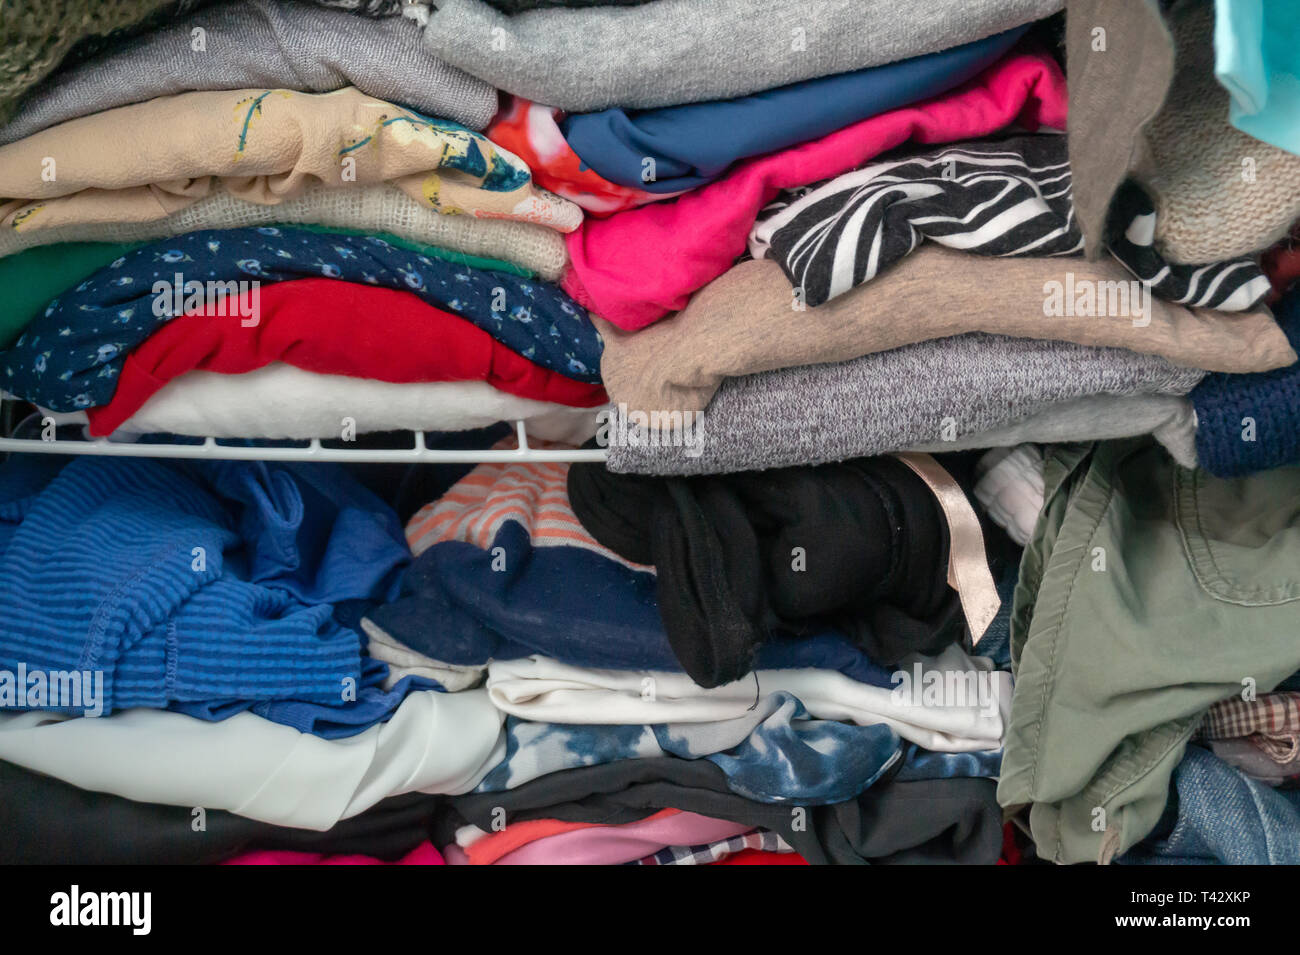 Confuso piegato vestiti stipati in un armadio su un ripiano. Raffigurante una donna guardaroba, consumismo, pulizia e riassetto giornaliero, spurgo, ecc. Foto Stock